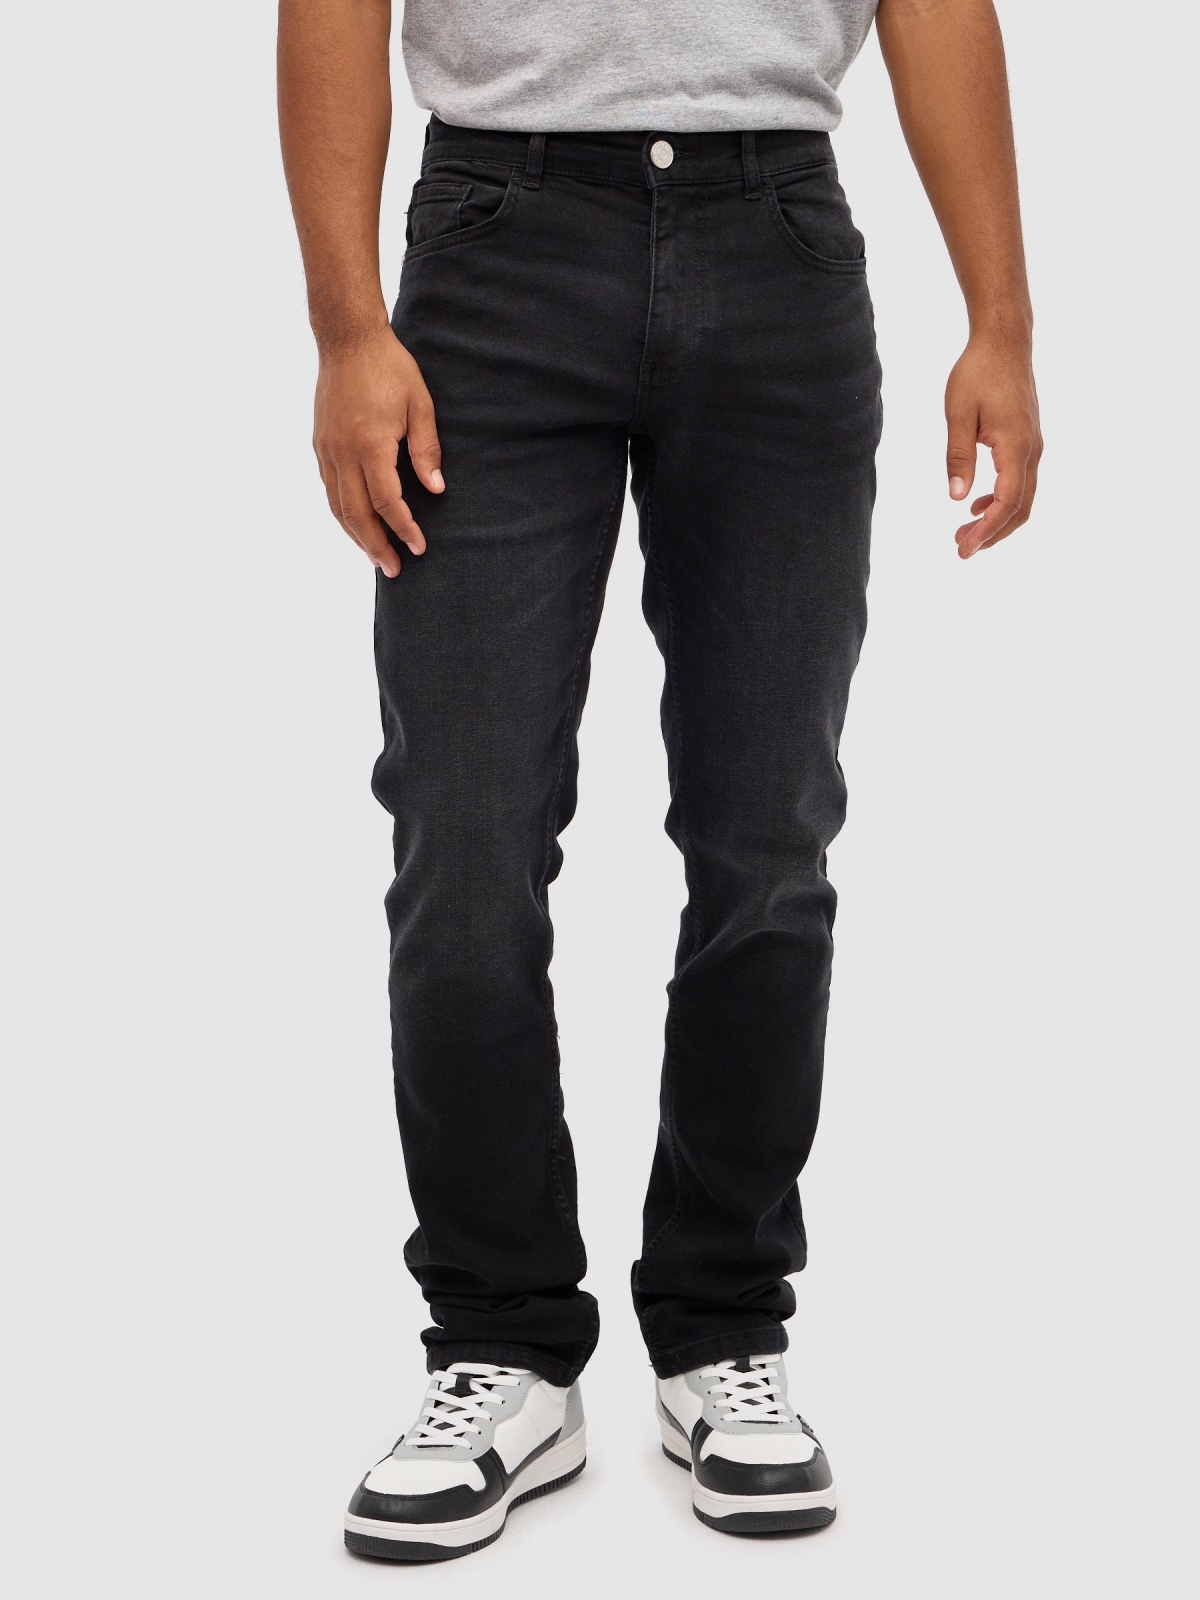 Jeans rasgadas normais preto vista meia frontal